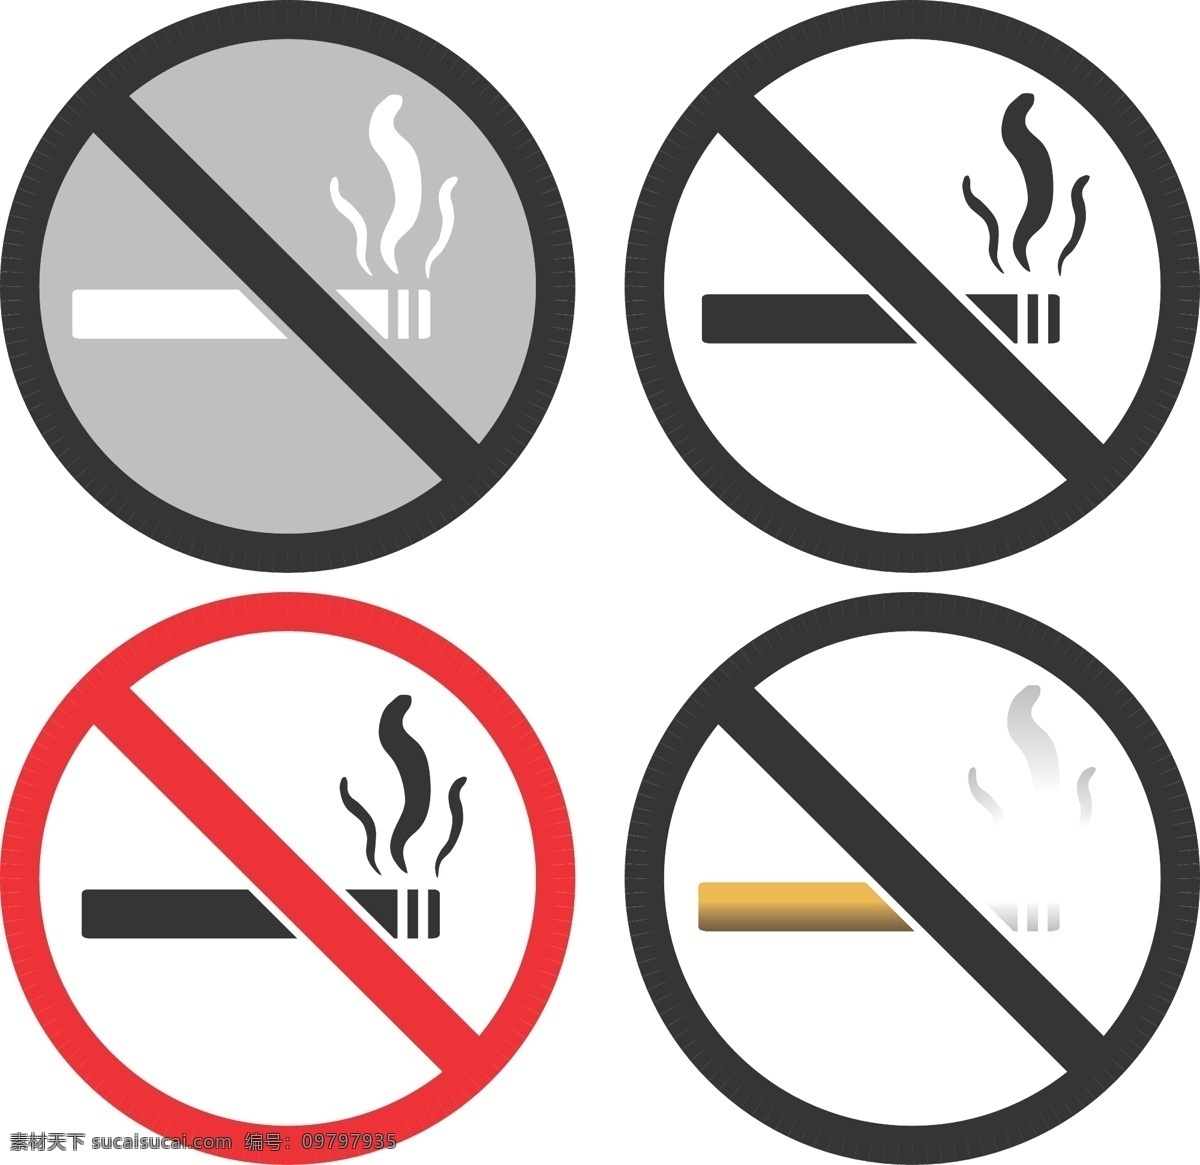 禁止 吸烟 标识 矢量 彩色 公共标识 禁止吸烟 模板 设计稿 素材元素 源文件 矢量图